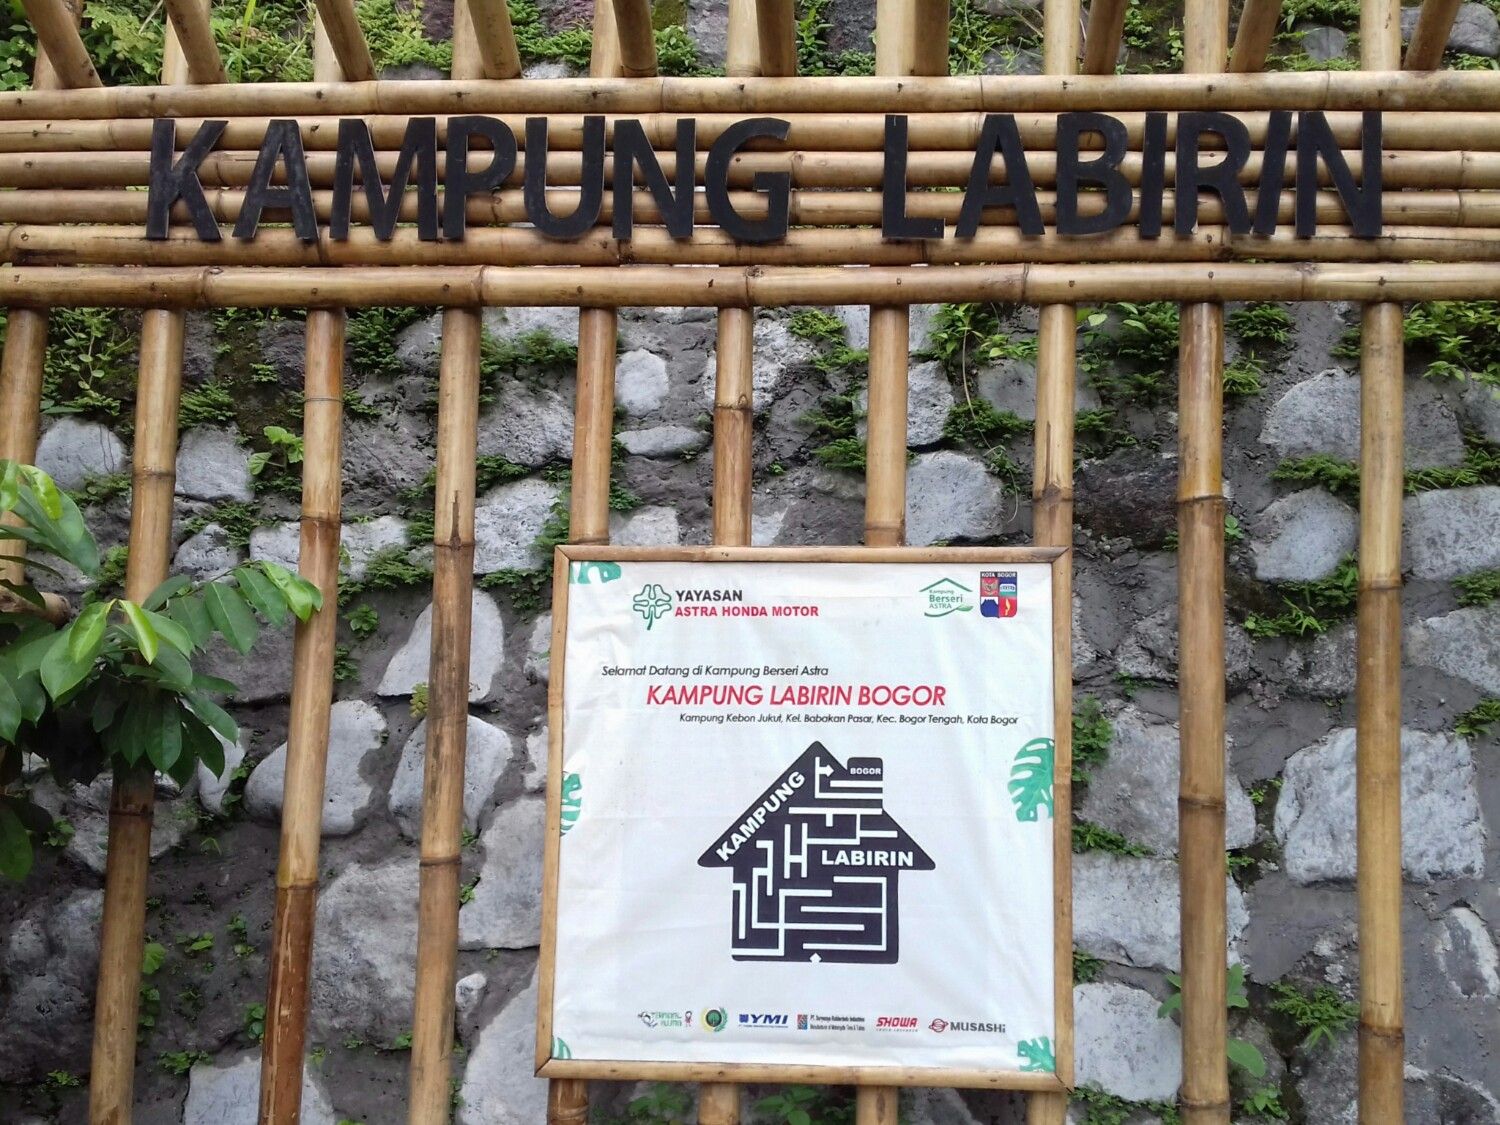 Kampung Labirin Bogor, potensi wisata yang sedang berkembang. Sarat cerita yang bisa dibagikan kepada yang belum berkunjung ke sana.